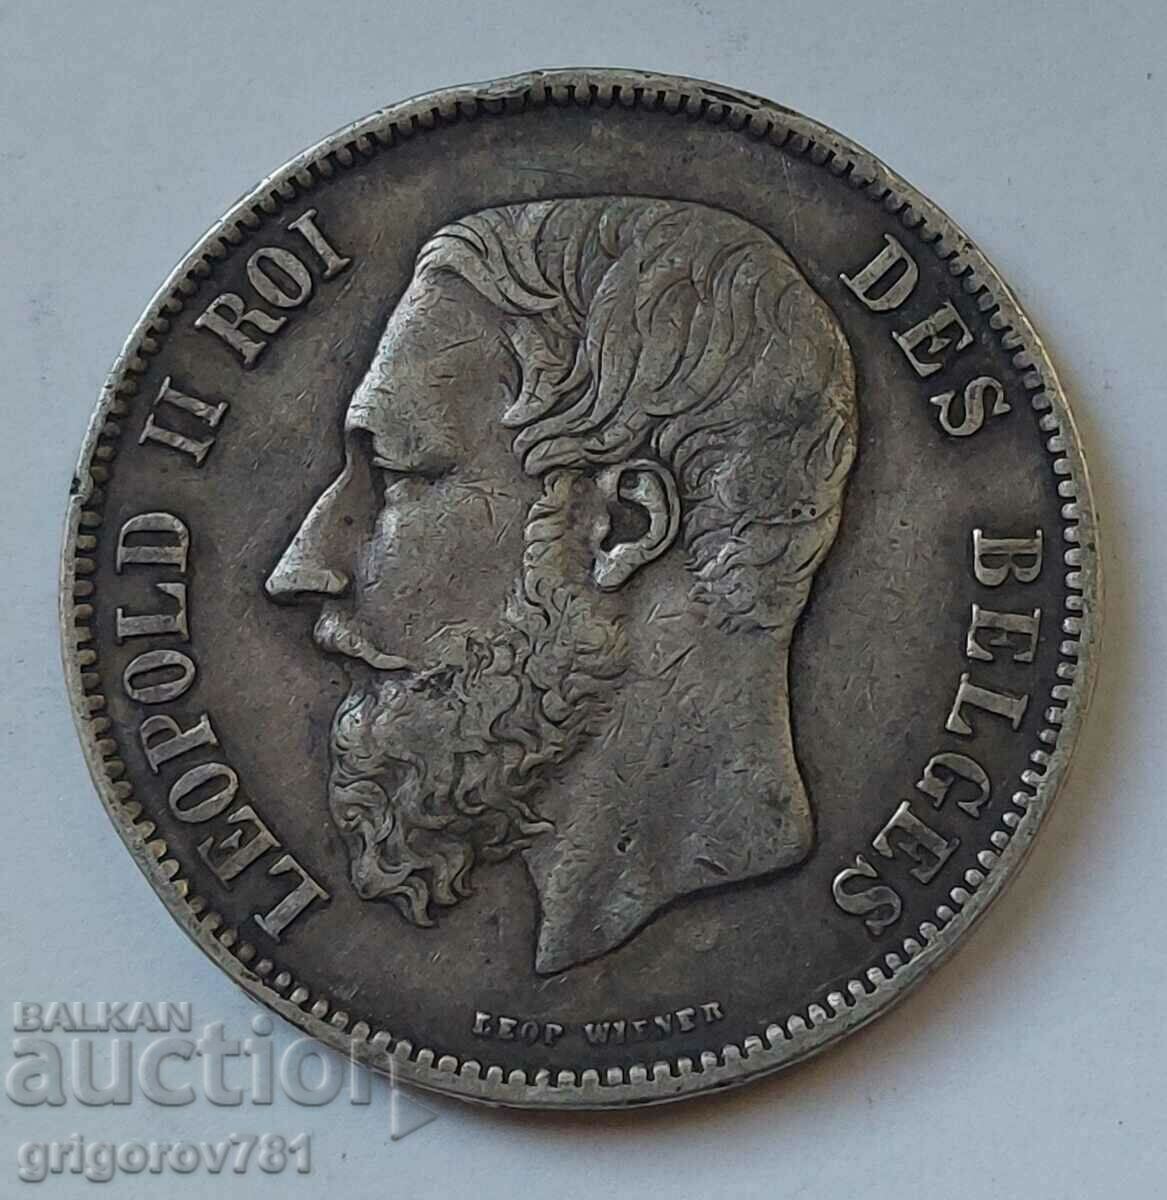 5 Francs Silver Belgium 1870 - Silver Coin #222